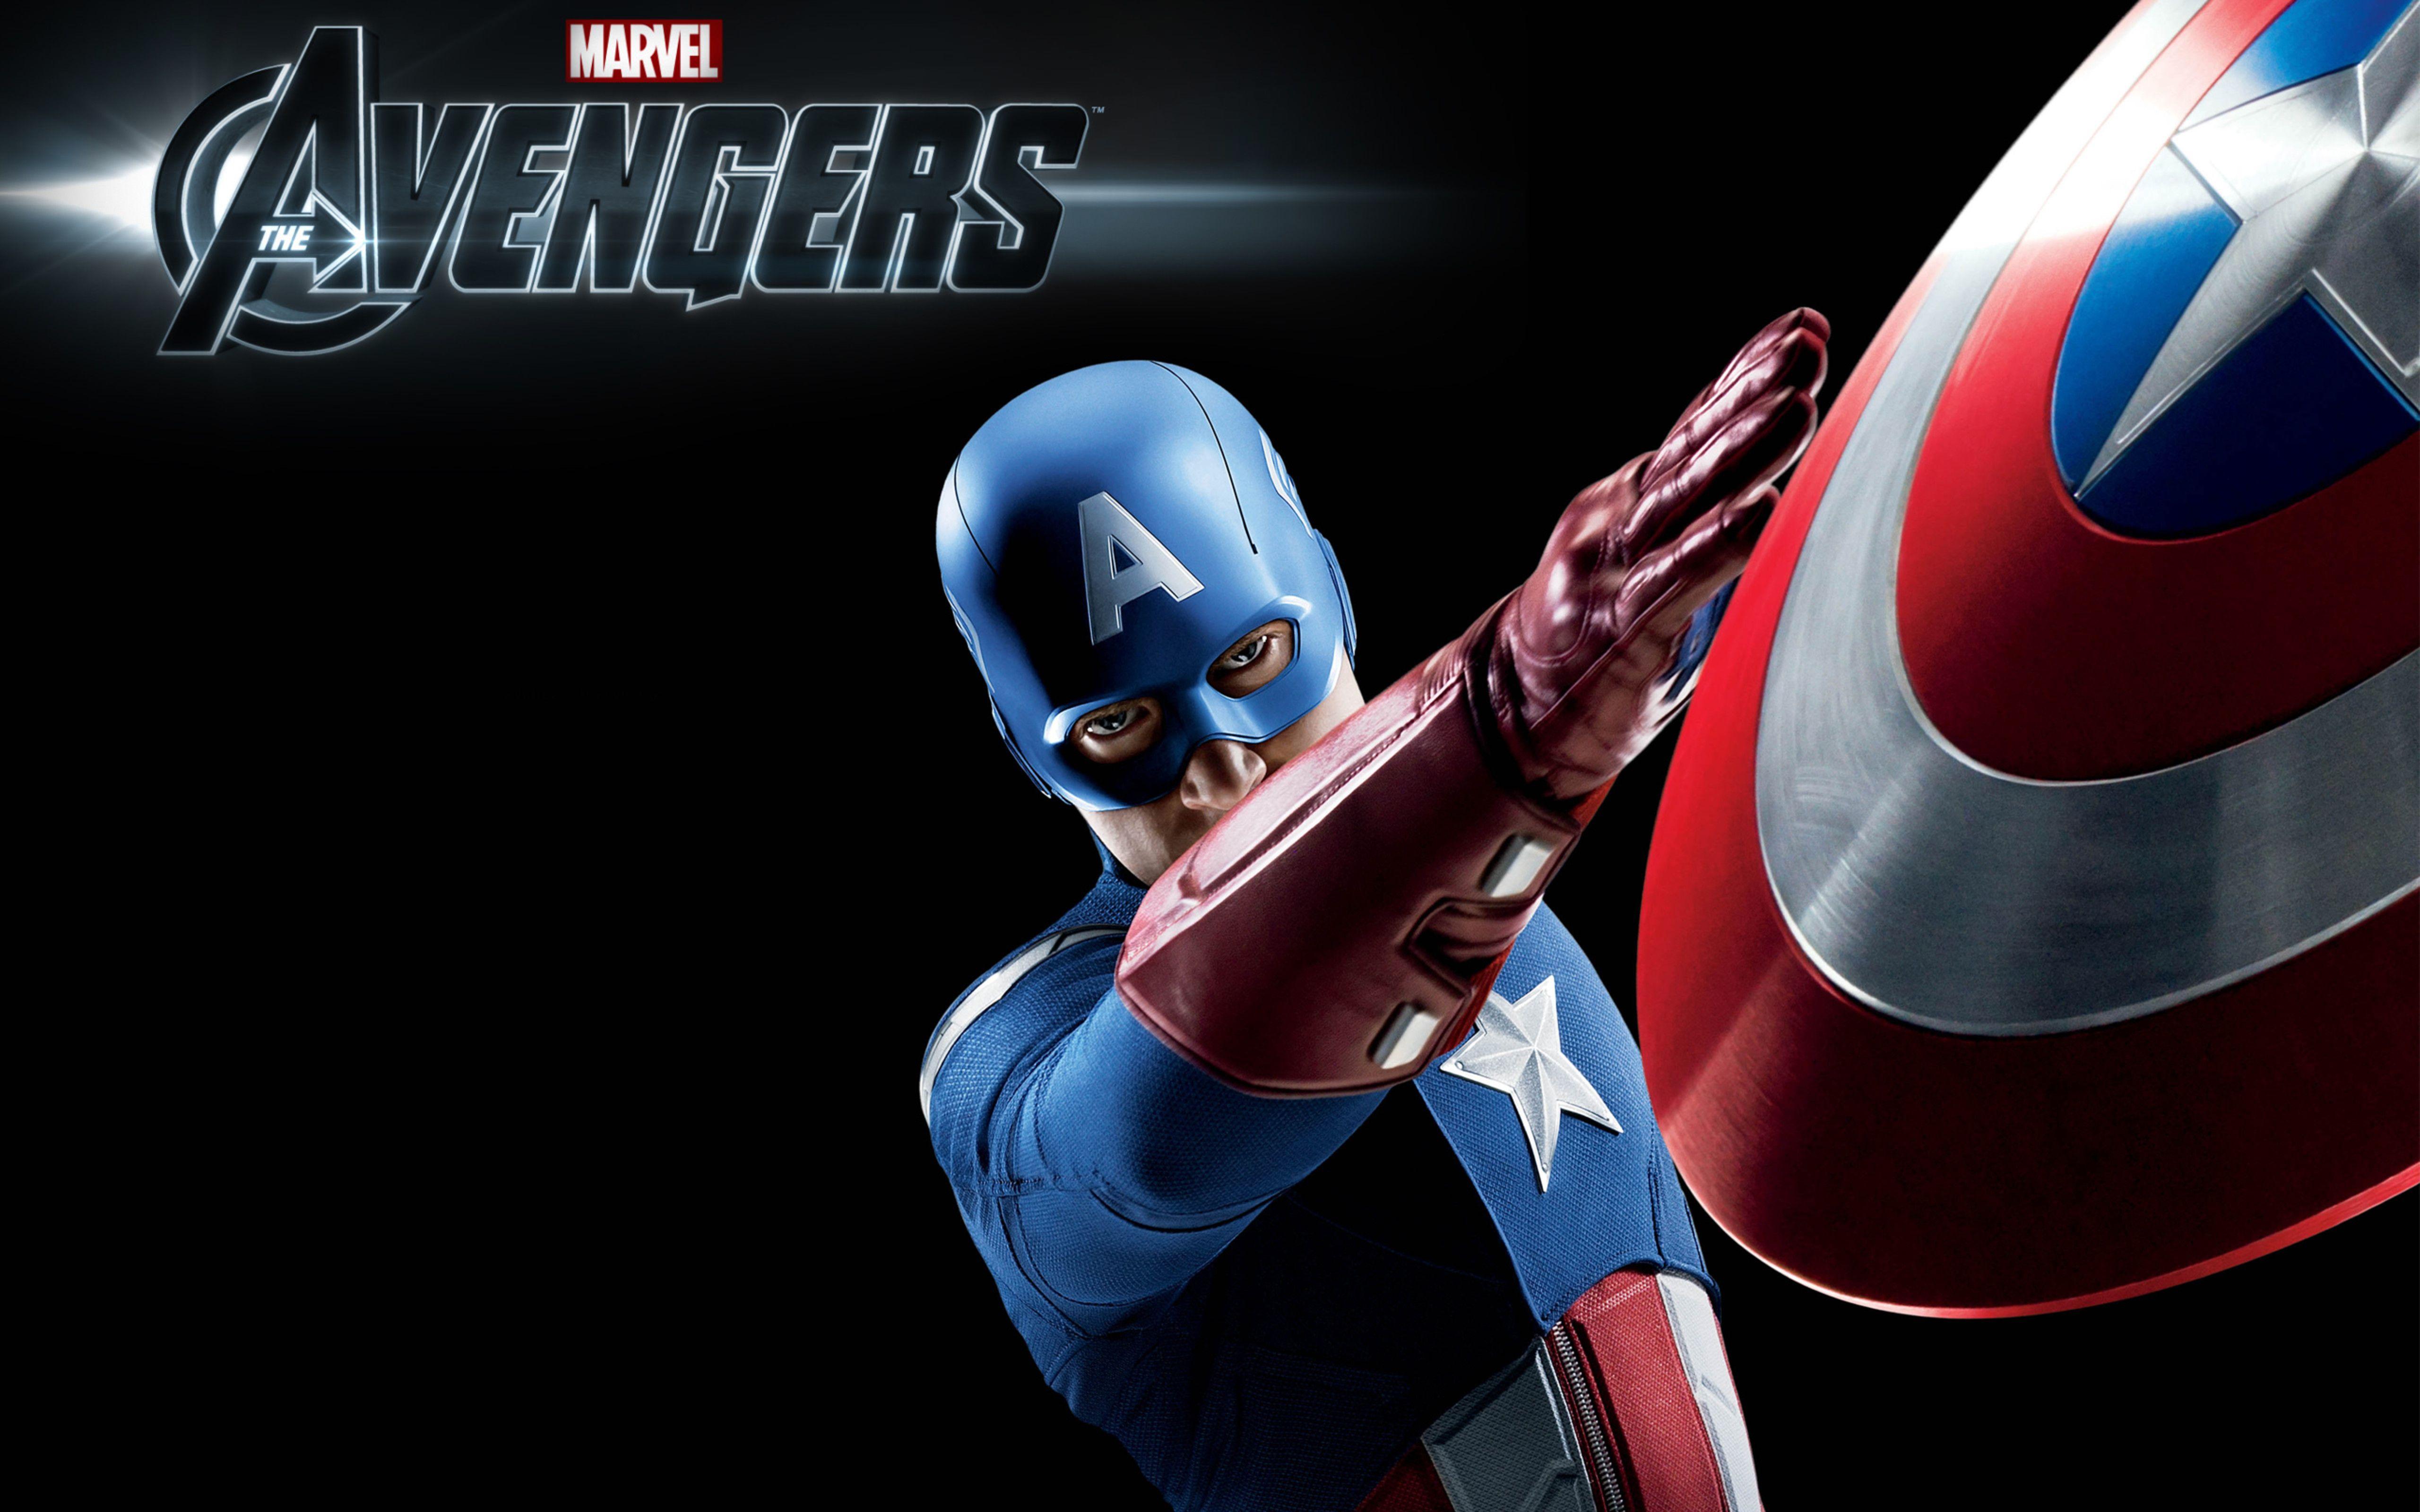 Chris Evans Marvel Super Hero Captain America First Avenger HD Wallpaper